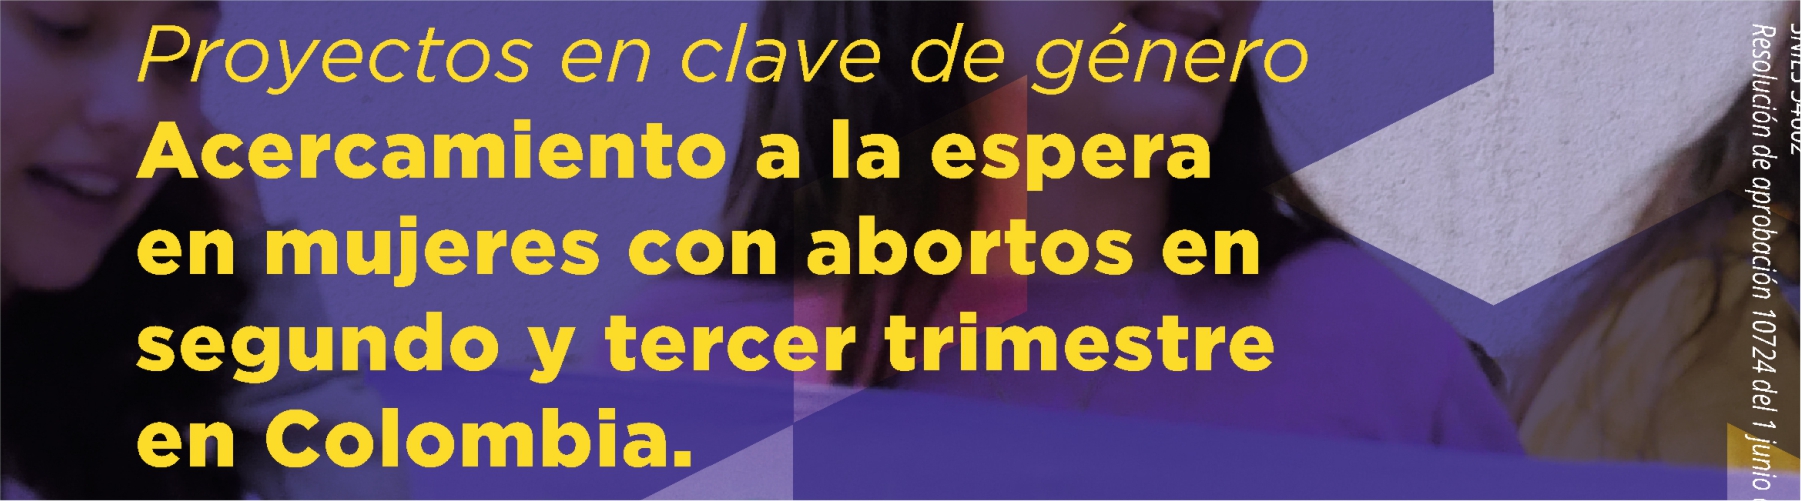 Acercamiento a la espera en mujeres con abortos en segundo y tercer trimestre en Colombia